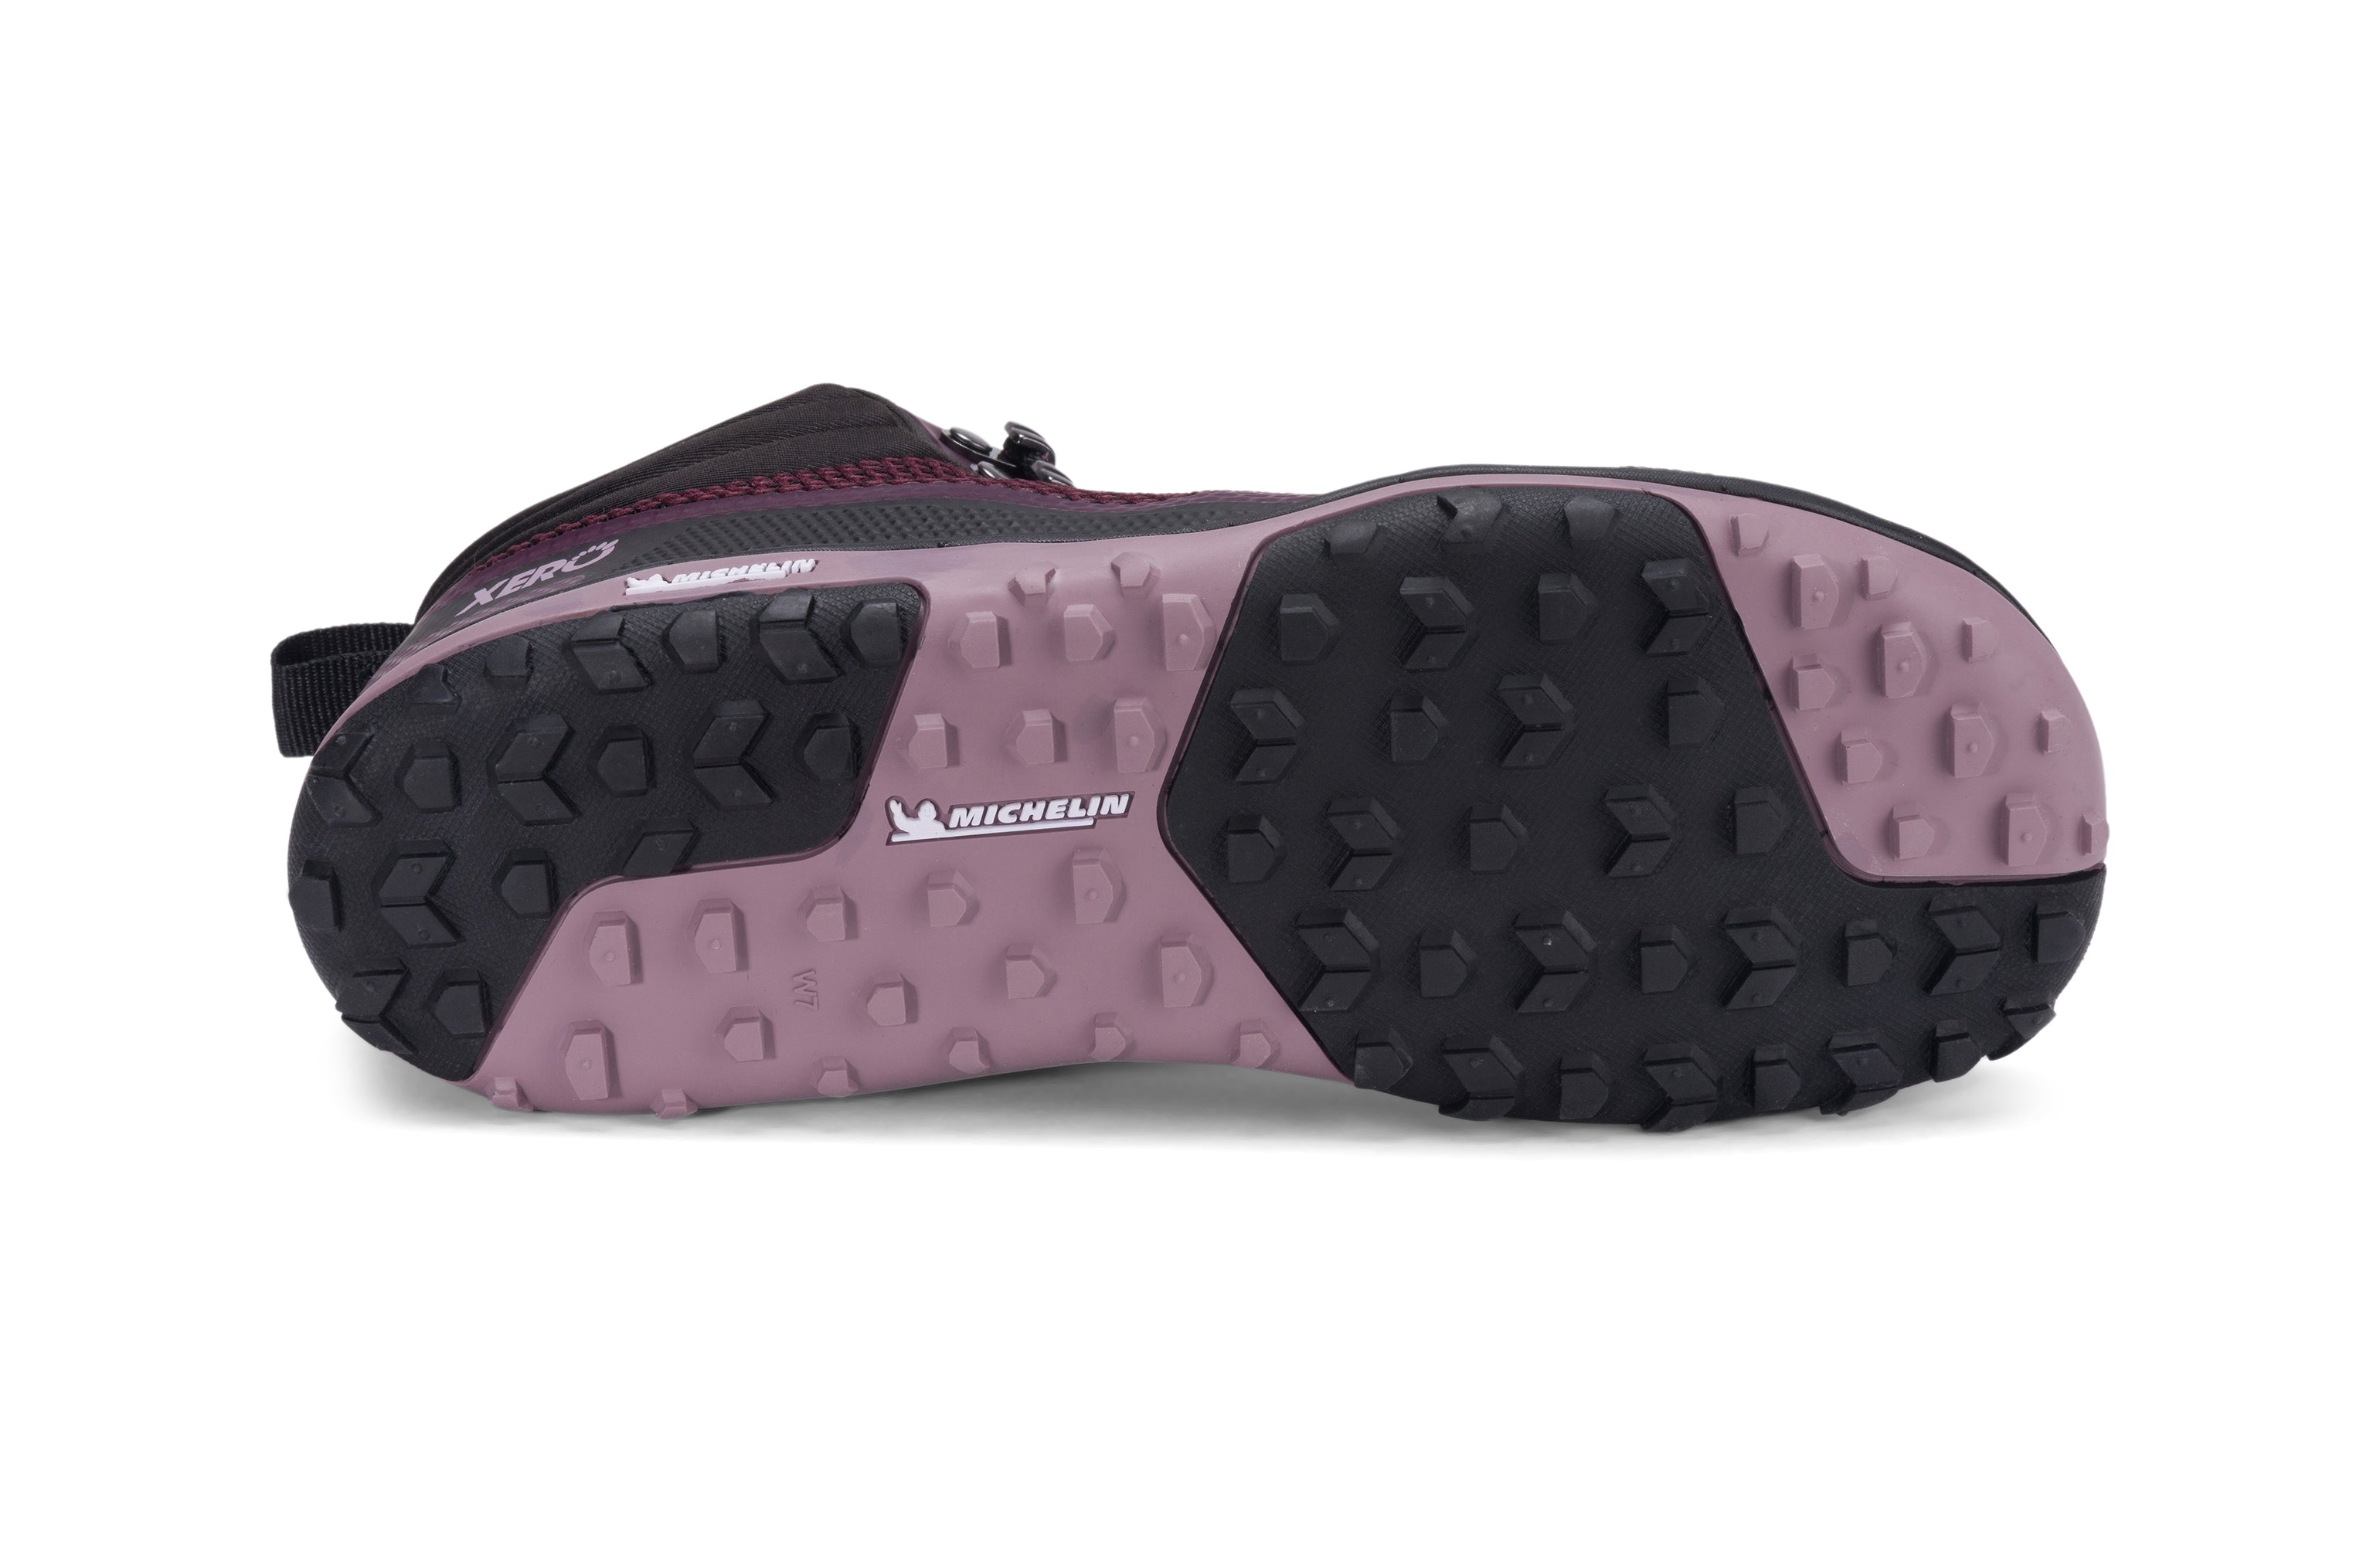 Xero Shoes Scrambler Mid Womens barfods lette vandrestøvler til kvinder i farven black / fig, saal